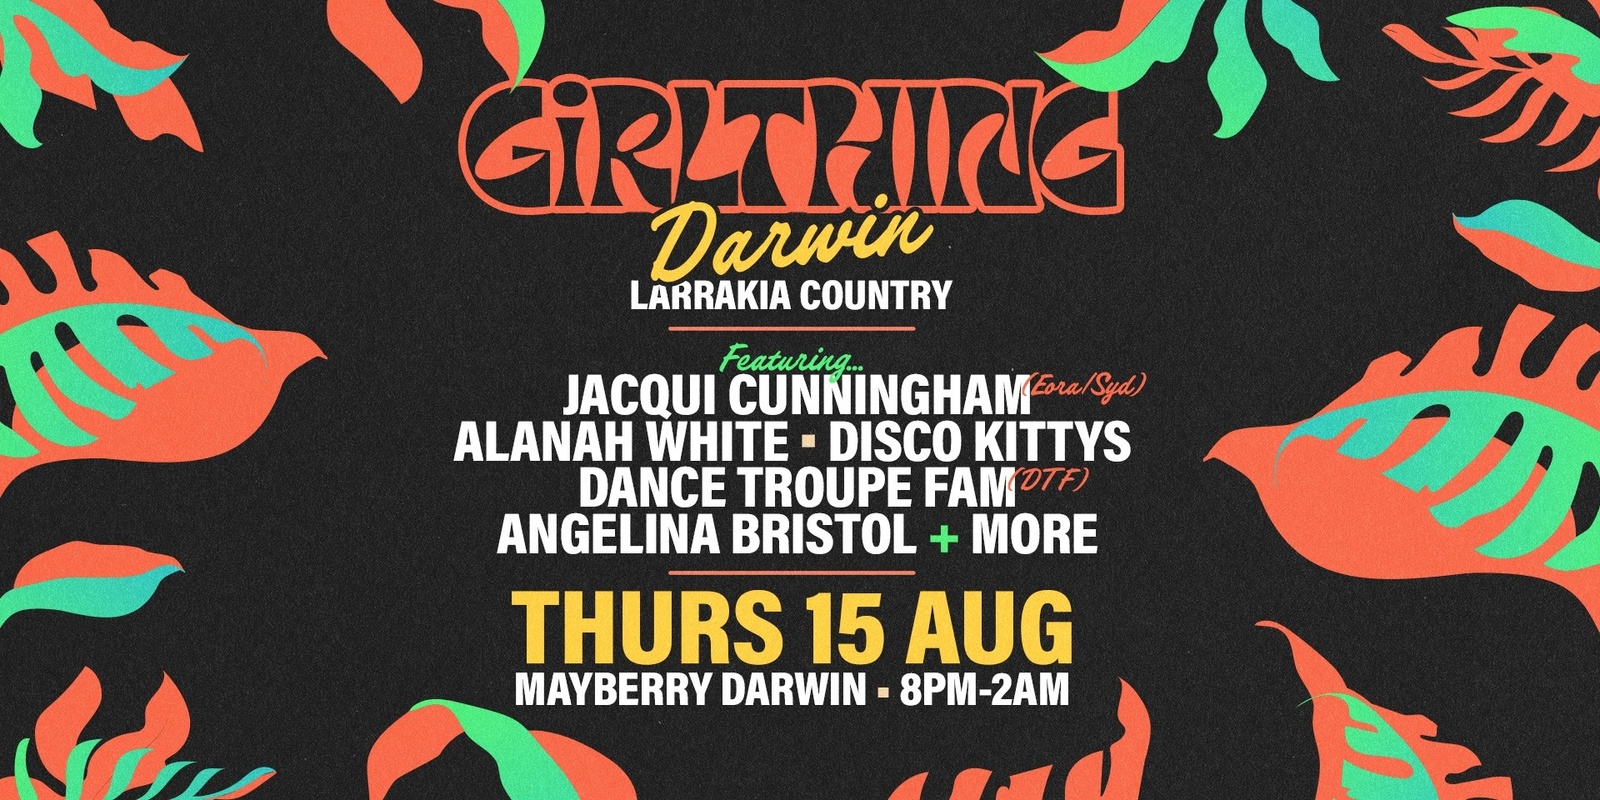 Banner image for GiRLTHING Darwin / Larrakia Country